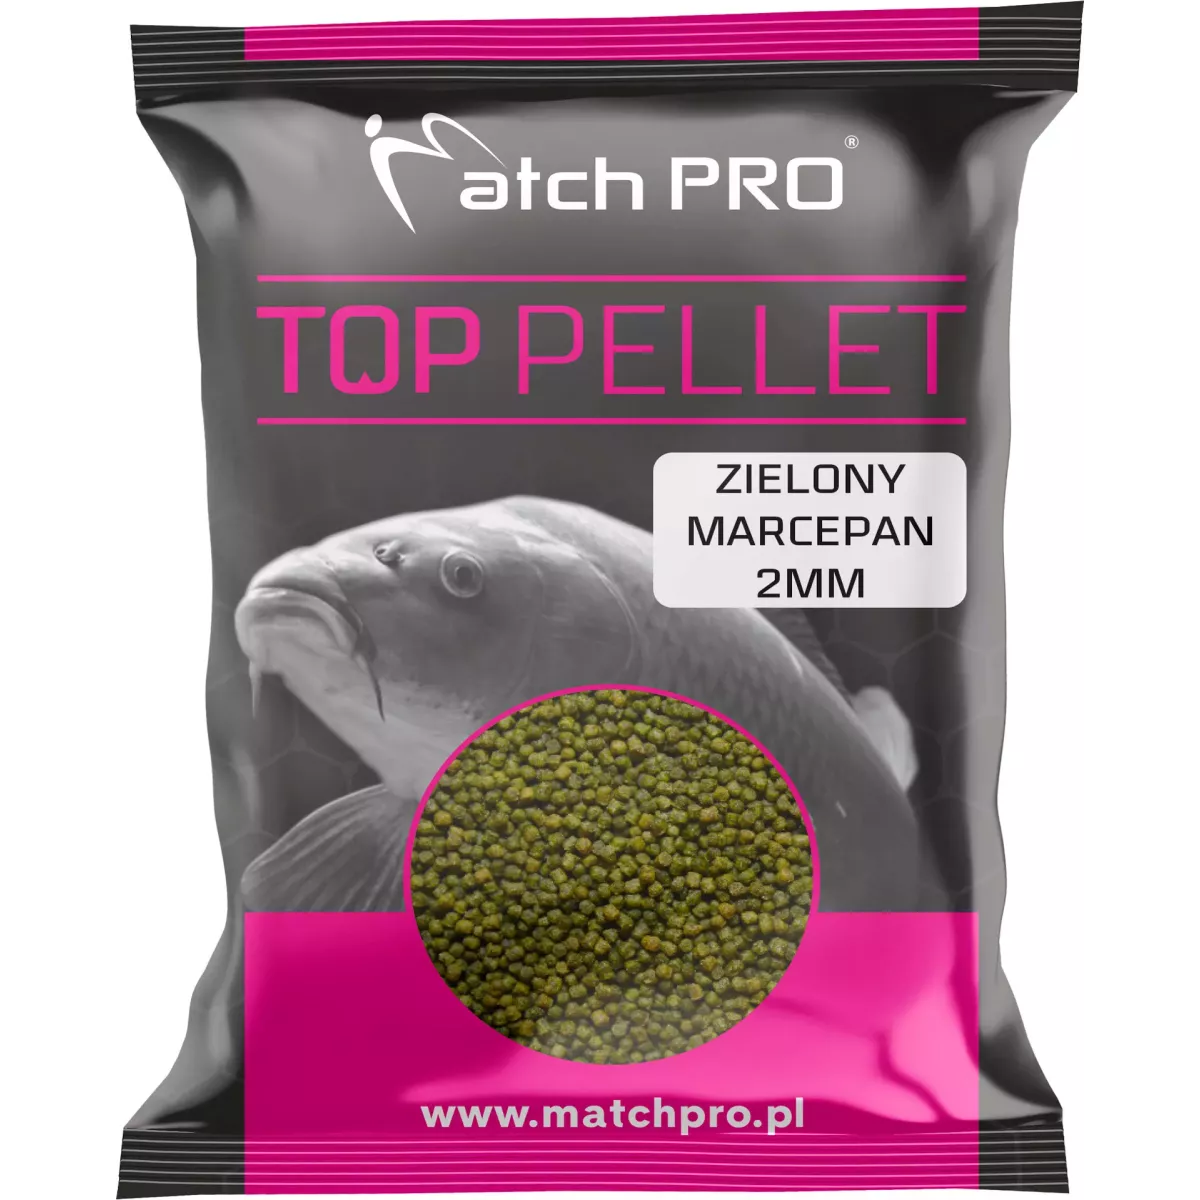 Pellet MatchPro TOP 2mm - ZIELONY MARCEPAN